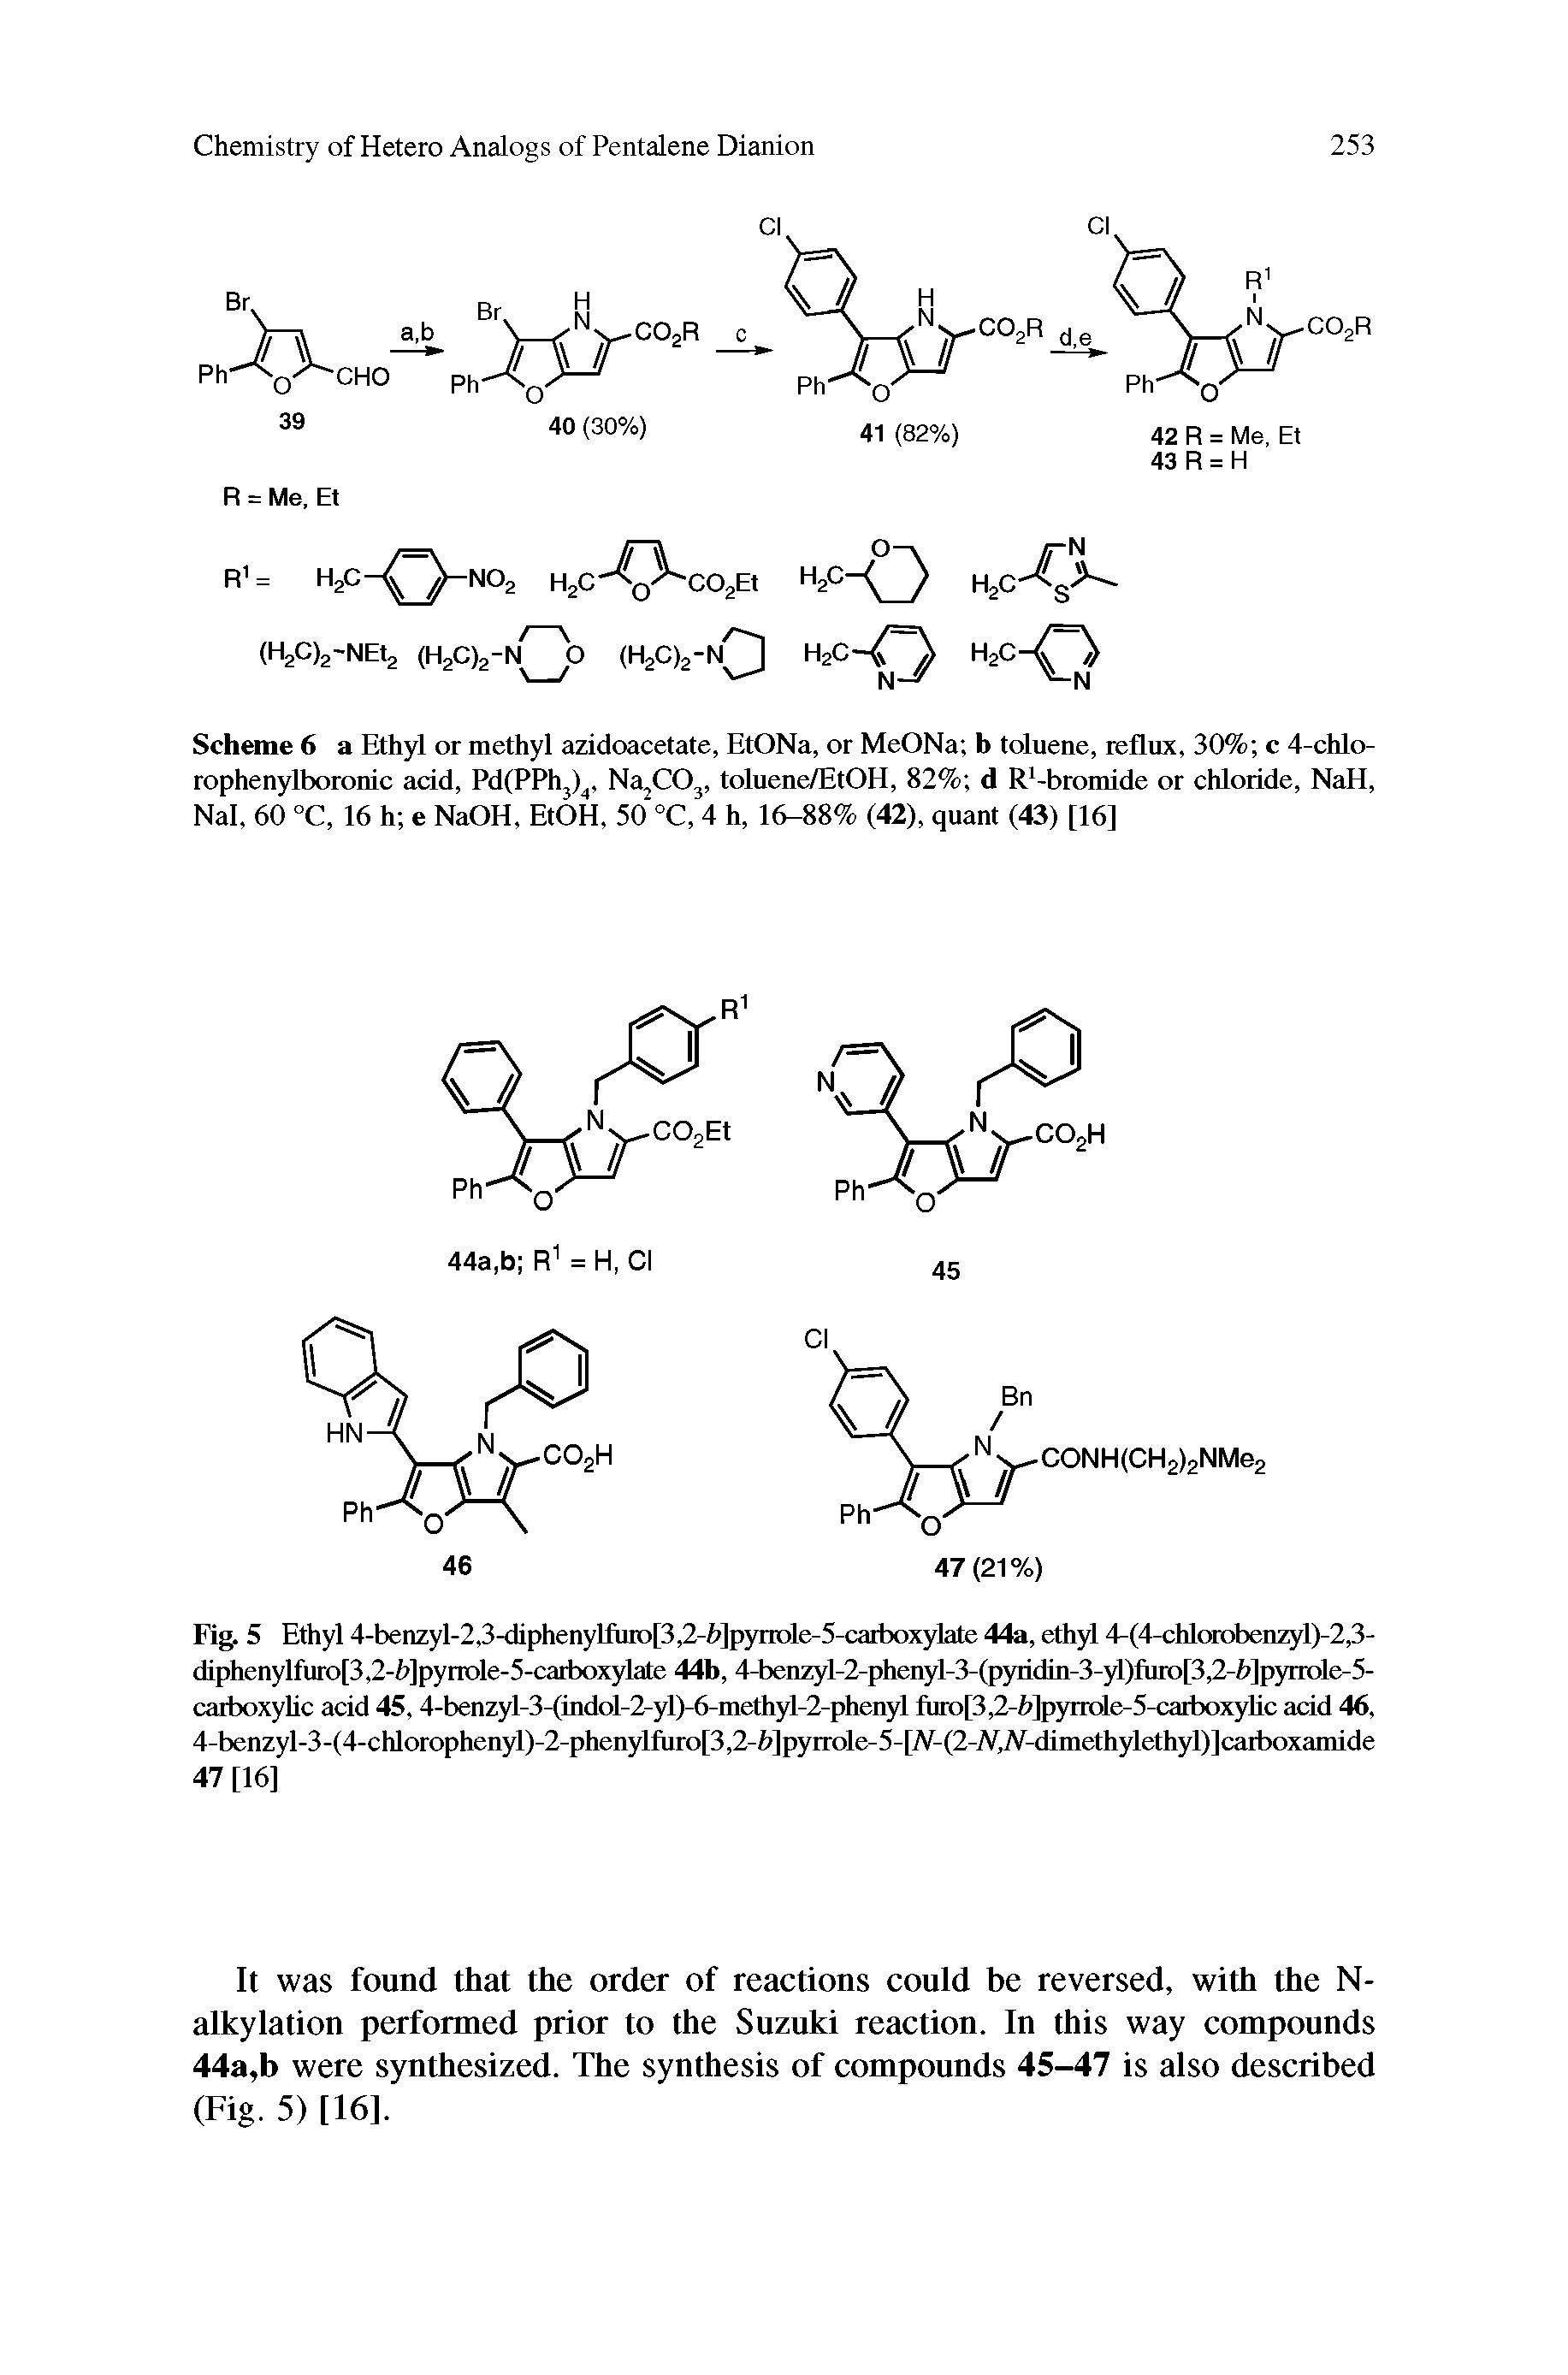 Fig. 5 Ethyl 4-benzyl-2,3-diphenyl fut 3,2-h pyrt lc-5-catlx)xylatc 44a, ethyl 4-(4-chlorobenzyl)-2,3-diphenylfuro[3,2-h]pynole-5-caiboxylate 44b, 4-bc,nzyl-2-phcnyl-3-(pyridin-3-yl)furo 3,2-h pyrrolc-5-carboxyhc acid 45, 4-benzyl-3-(indol-2-yl)-6-methyl-2-phenyl furo 3,2-h pyrrolc-5-catlx)xylic add 46, 4-benzyl-3-(4-chlorophenyl)-2-phenylfuro[3,2-fc]pyrrole-5-[JV-(2-JV,JV-dimethylethyl)]carboxamide 47 [16]...